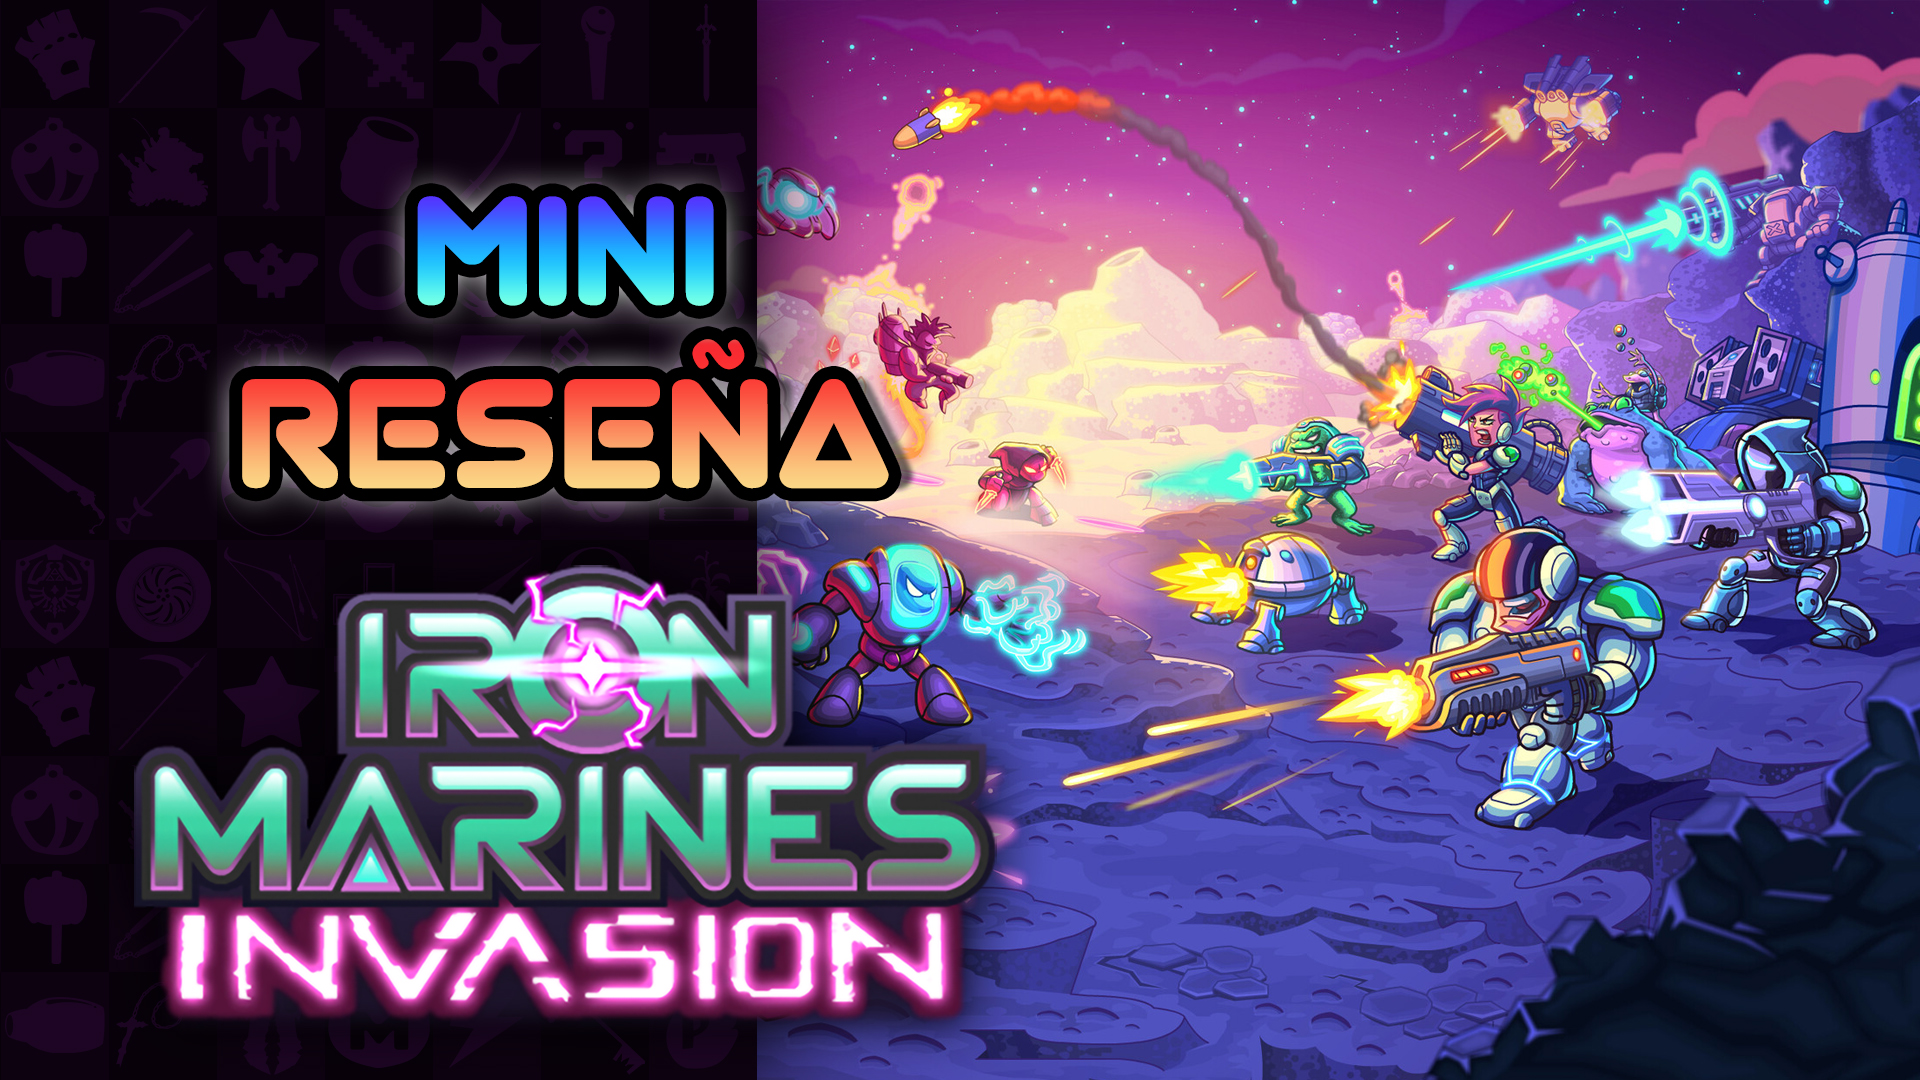 Mini Reseña Iron Marines Invasion – Un RTS sencillo, pero muy divertido